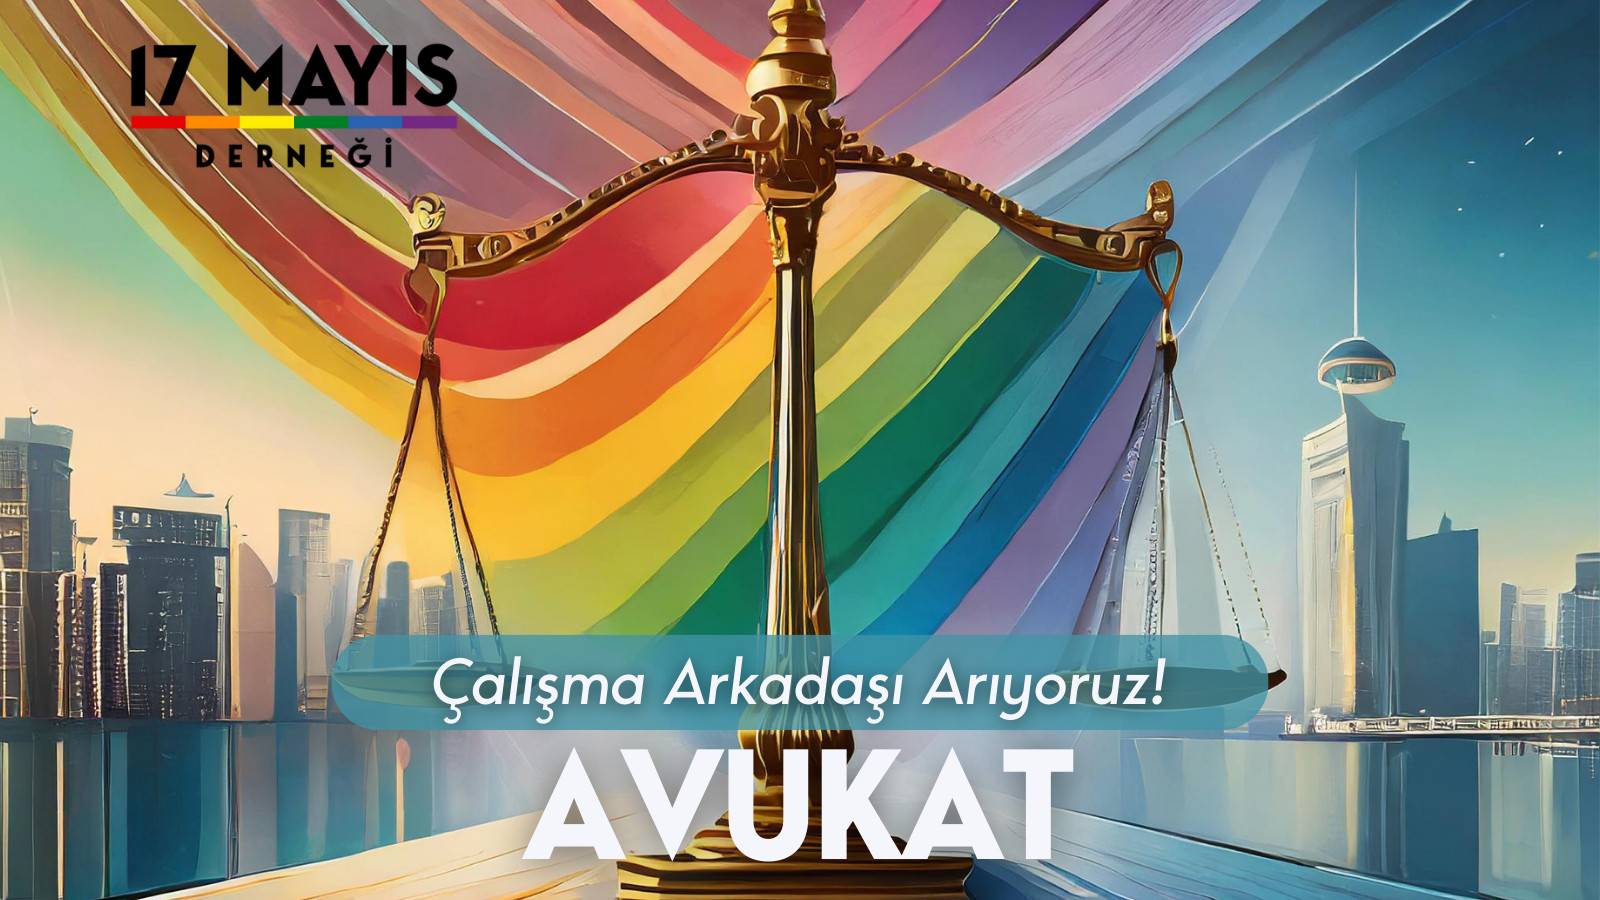 17 Mayıs Derneği Avukat Çalışma Arkadaşı Arıyor! - 17 Mayıs